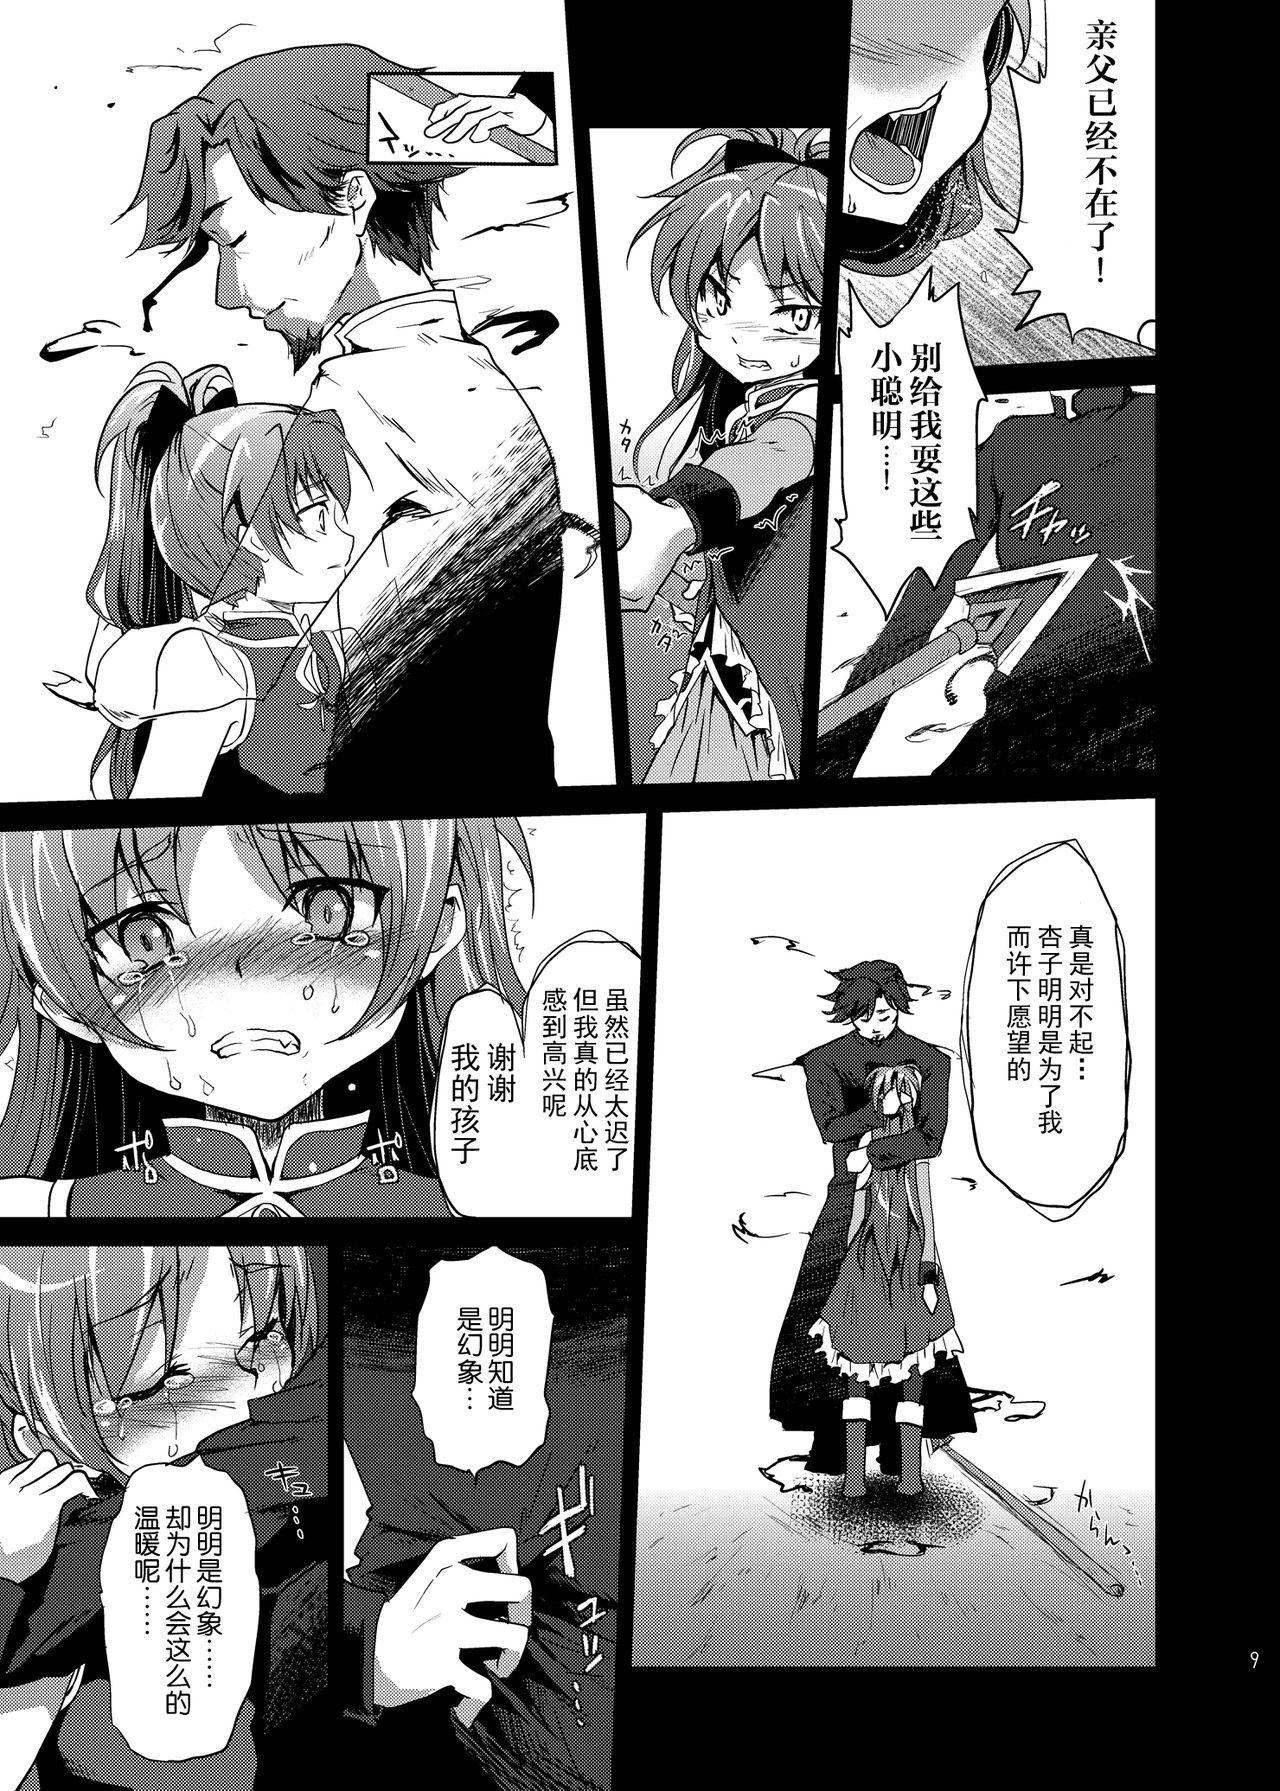 Pene Mahou Shoujo Zetsubou Kansatsu Kiroku - Puella magi madoka magica Camgirl - Page 8